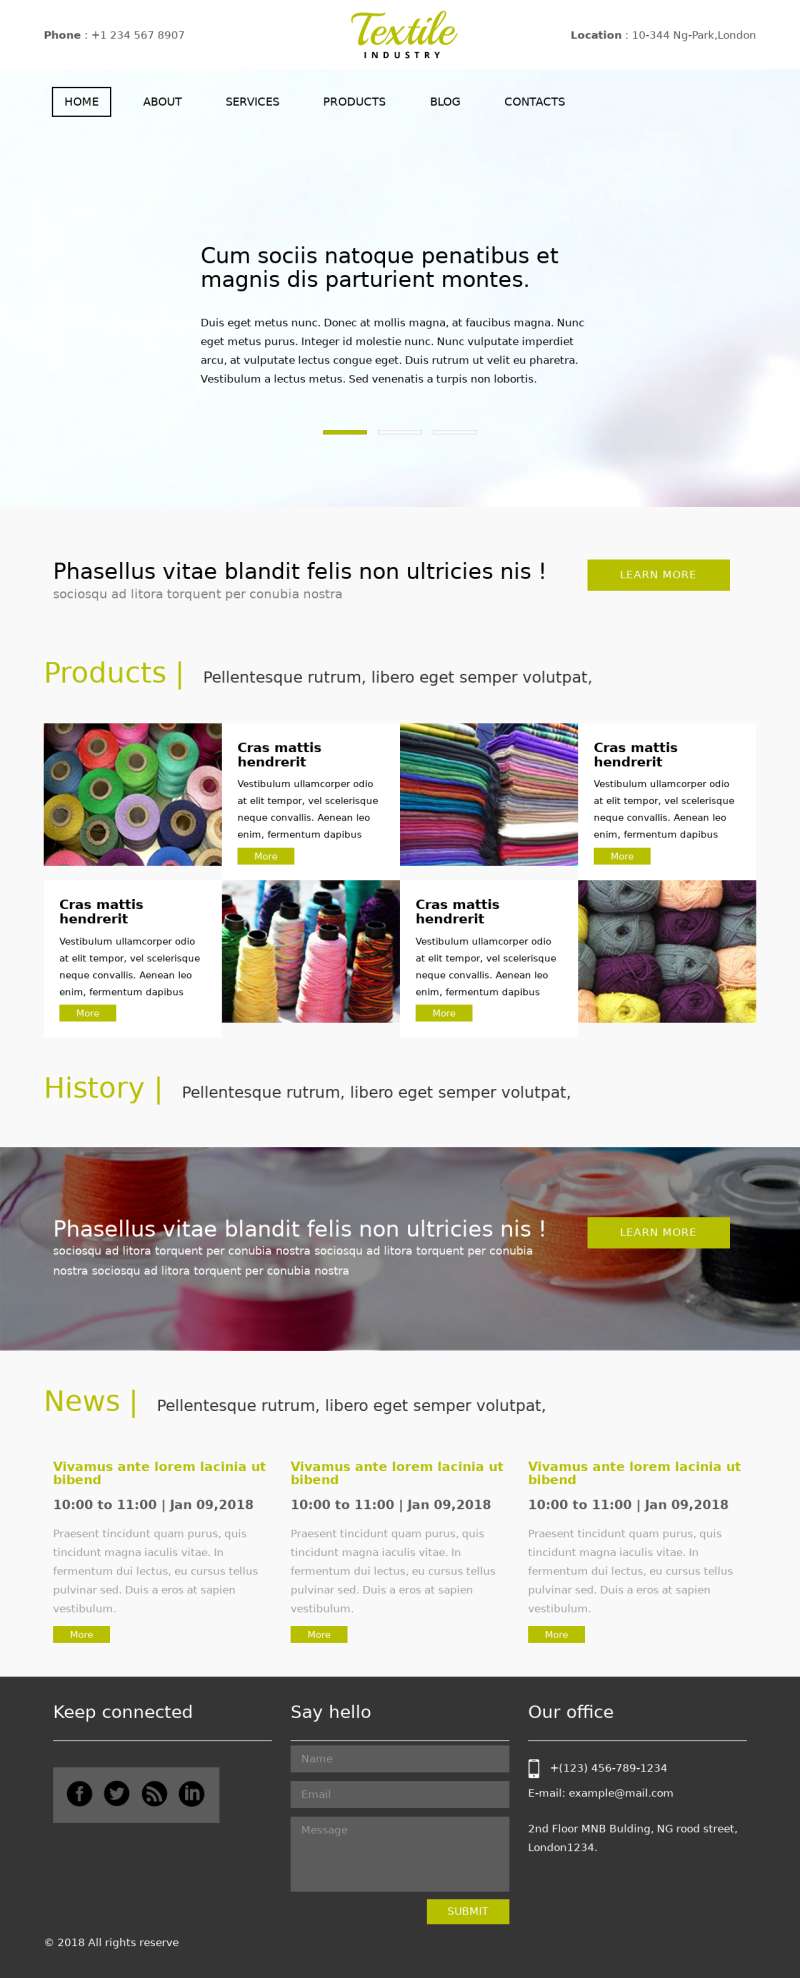 简洁的纺织工业企业展示html网站模板